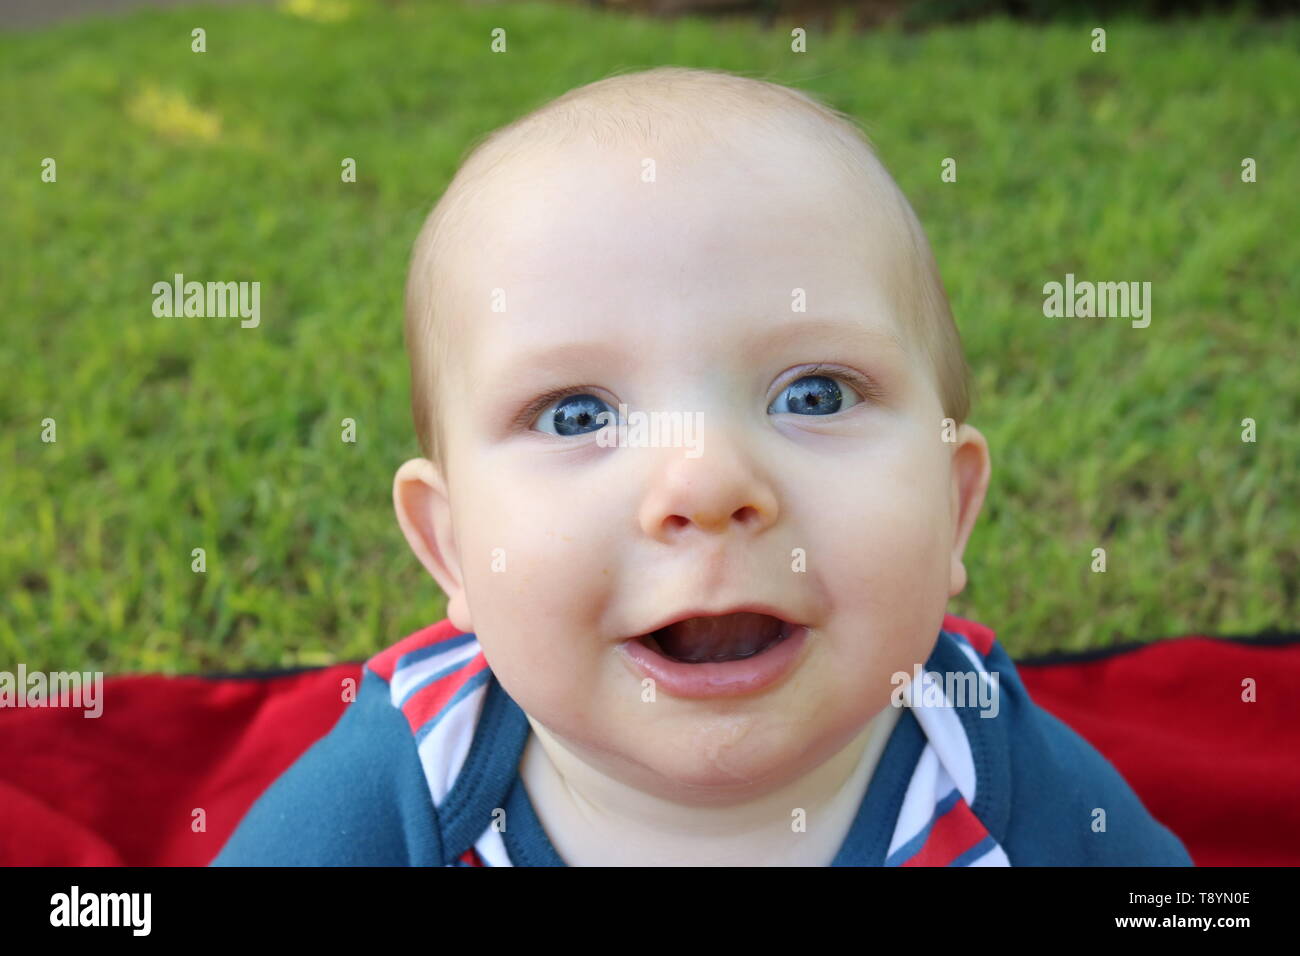 Retrato de un bebé feliz con grandes ojos azules, en patriótico outfit Foto de stock